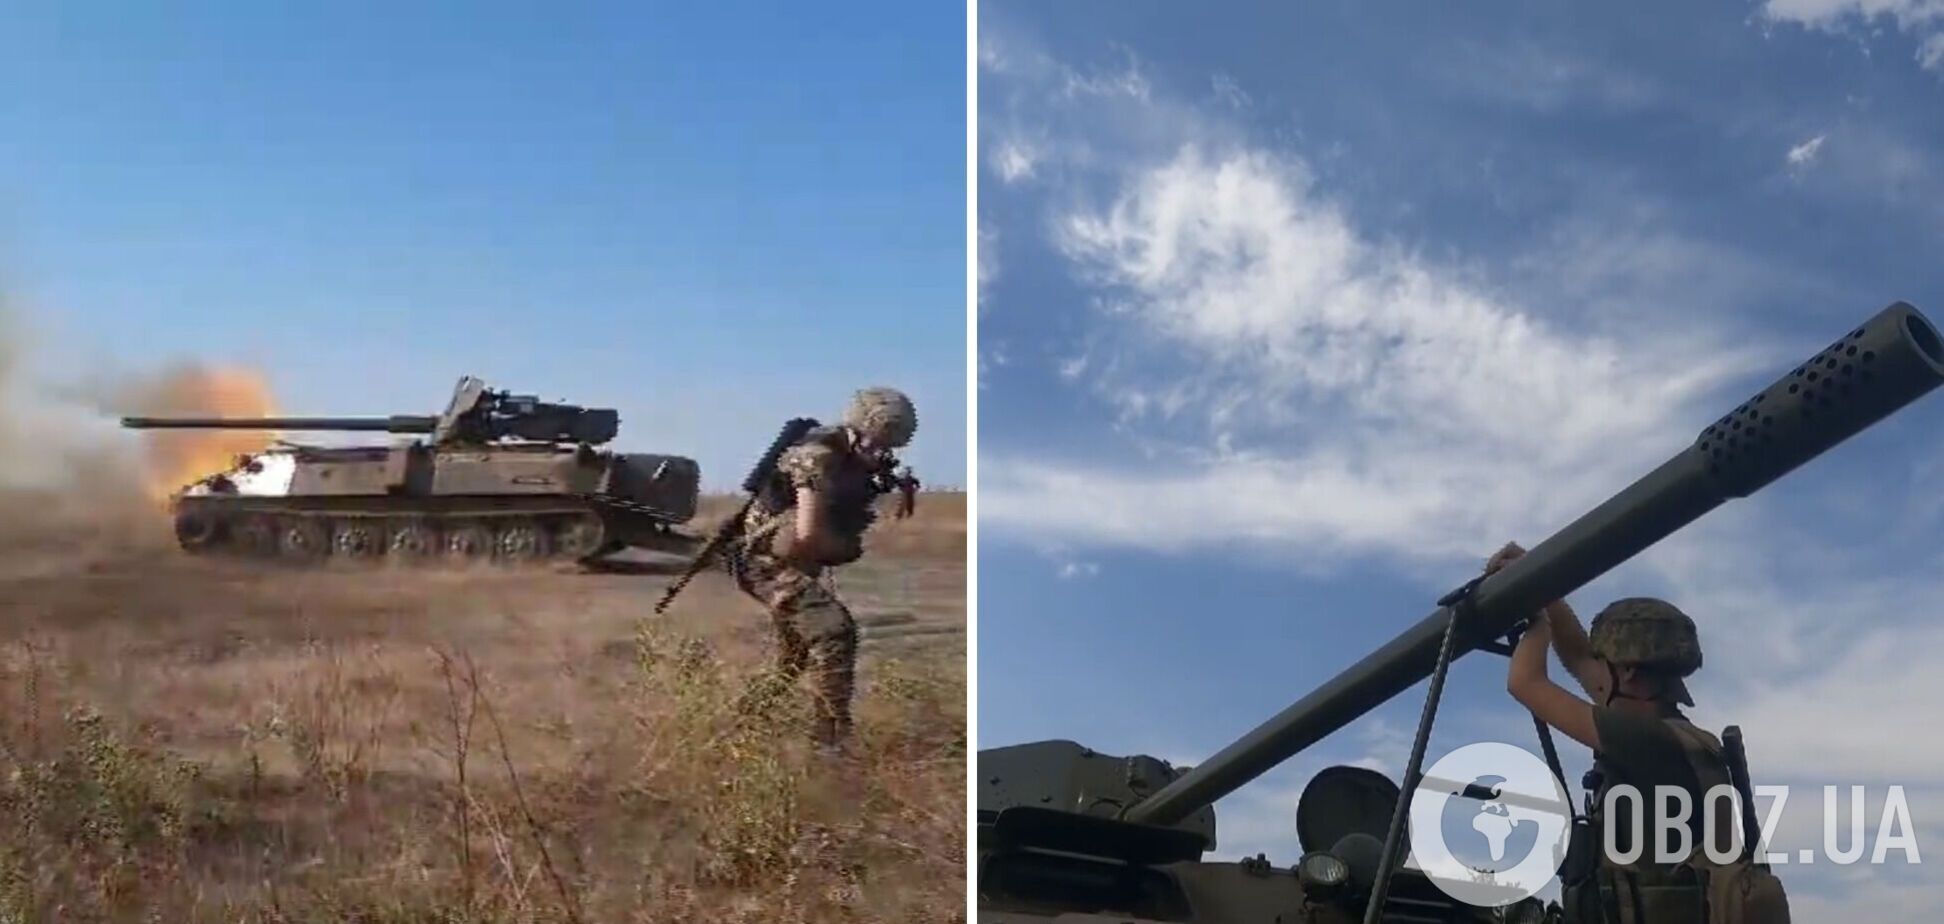 Українські воїни зібрали потужну бойову машину з трофейної техніки: відео з розробкою 